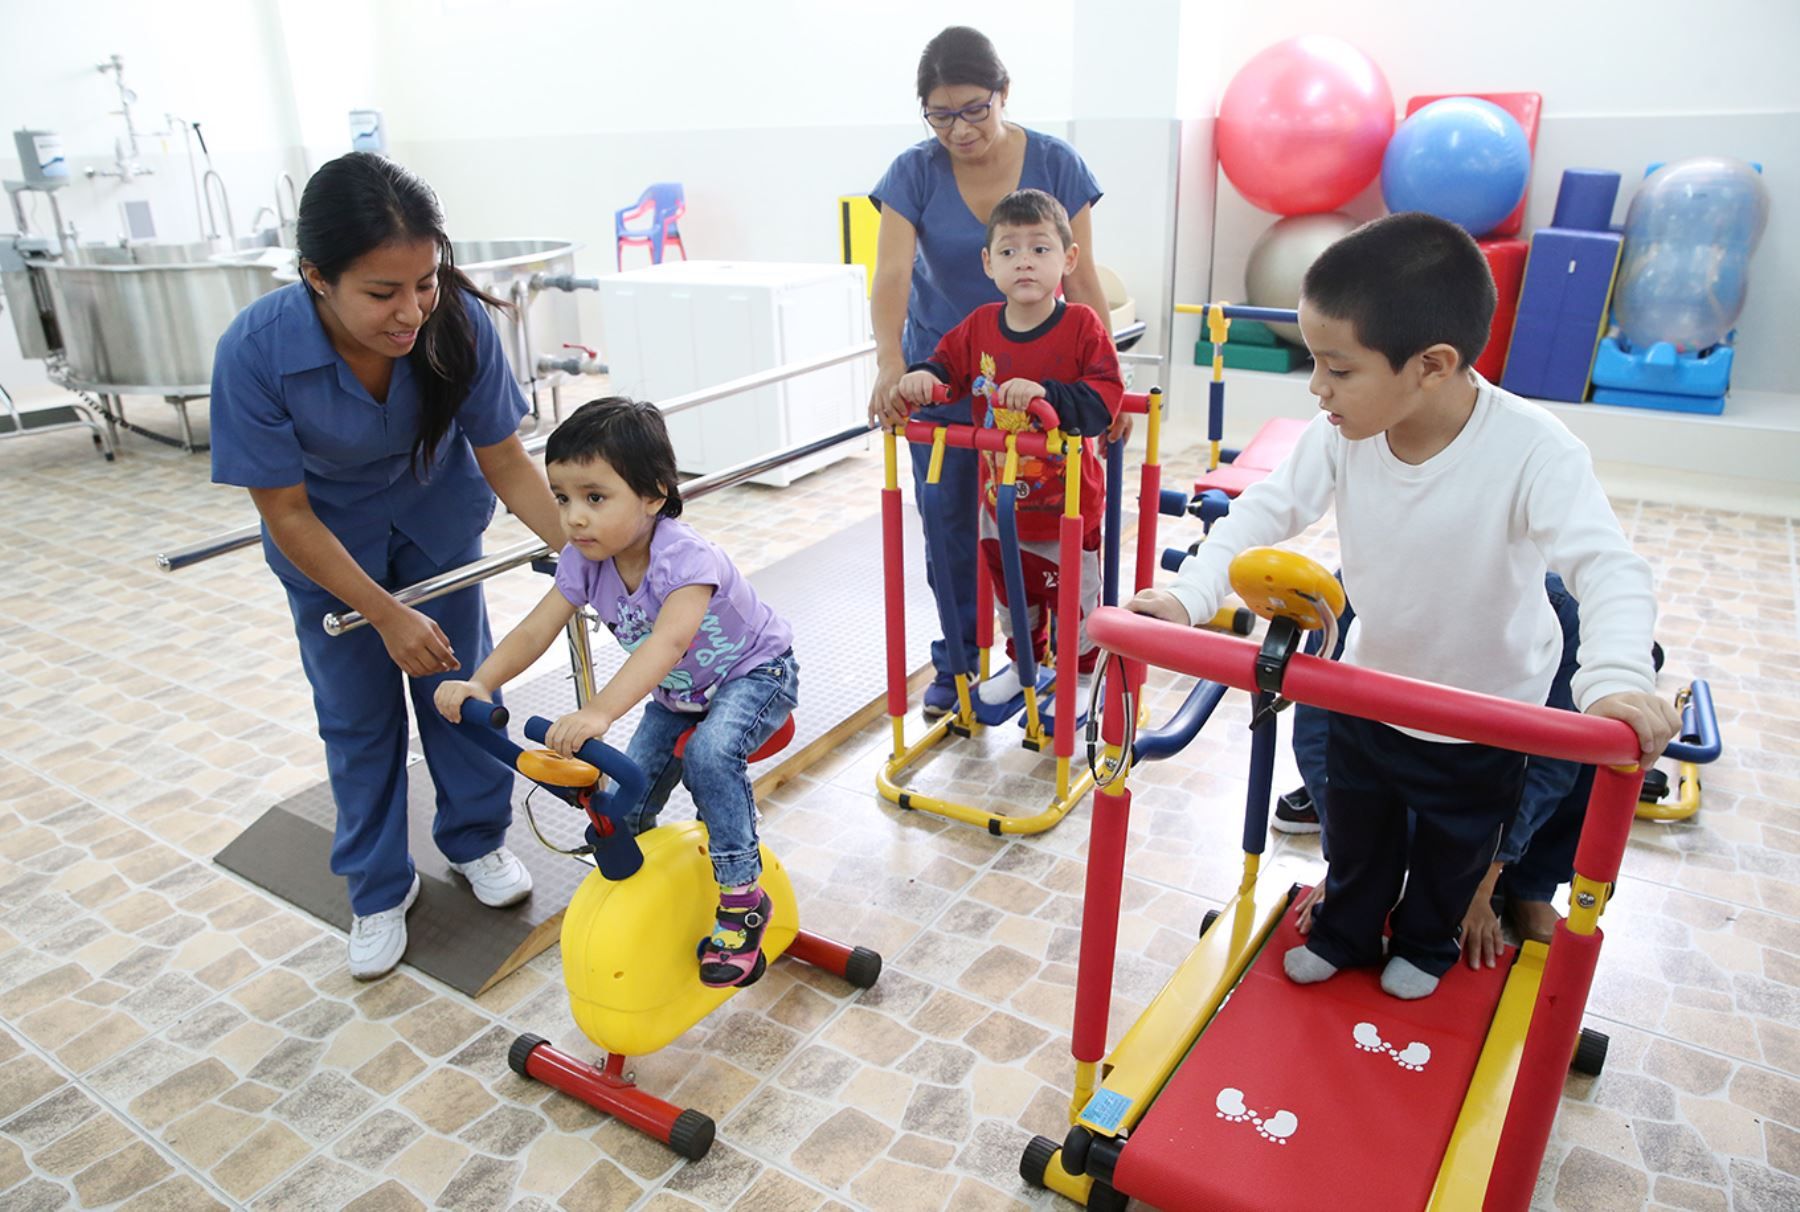 La neurorrehabilitación pediátrica aporta seguridad en el entorno escolar y personal de niños con retrasos del desarrollo